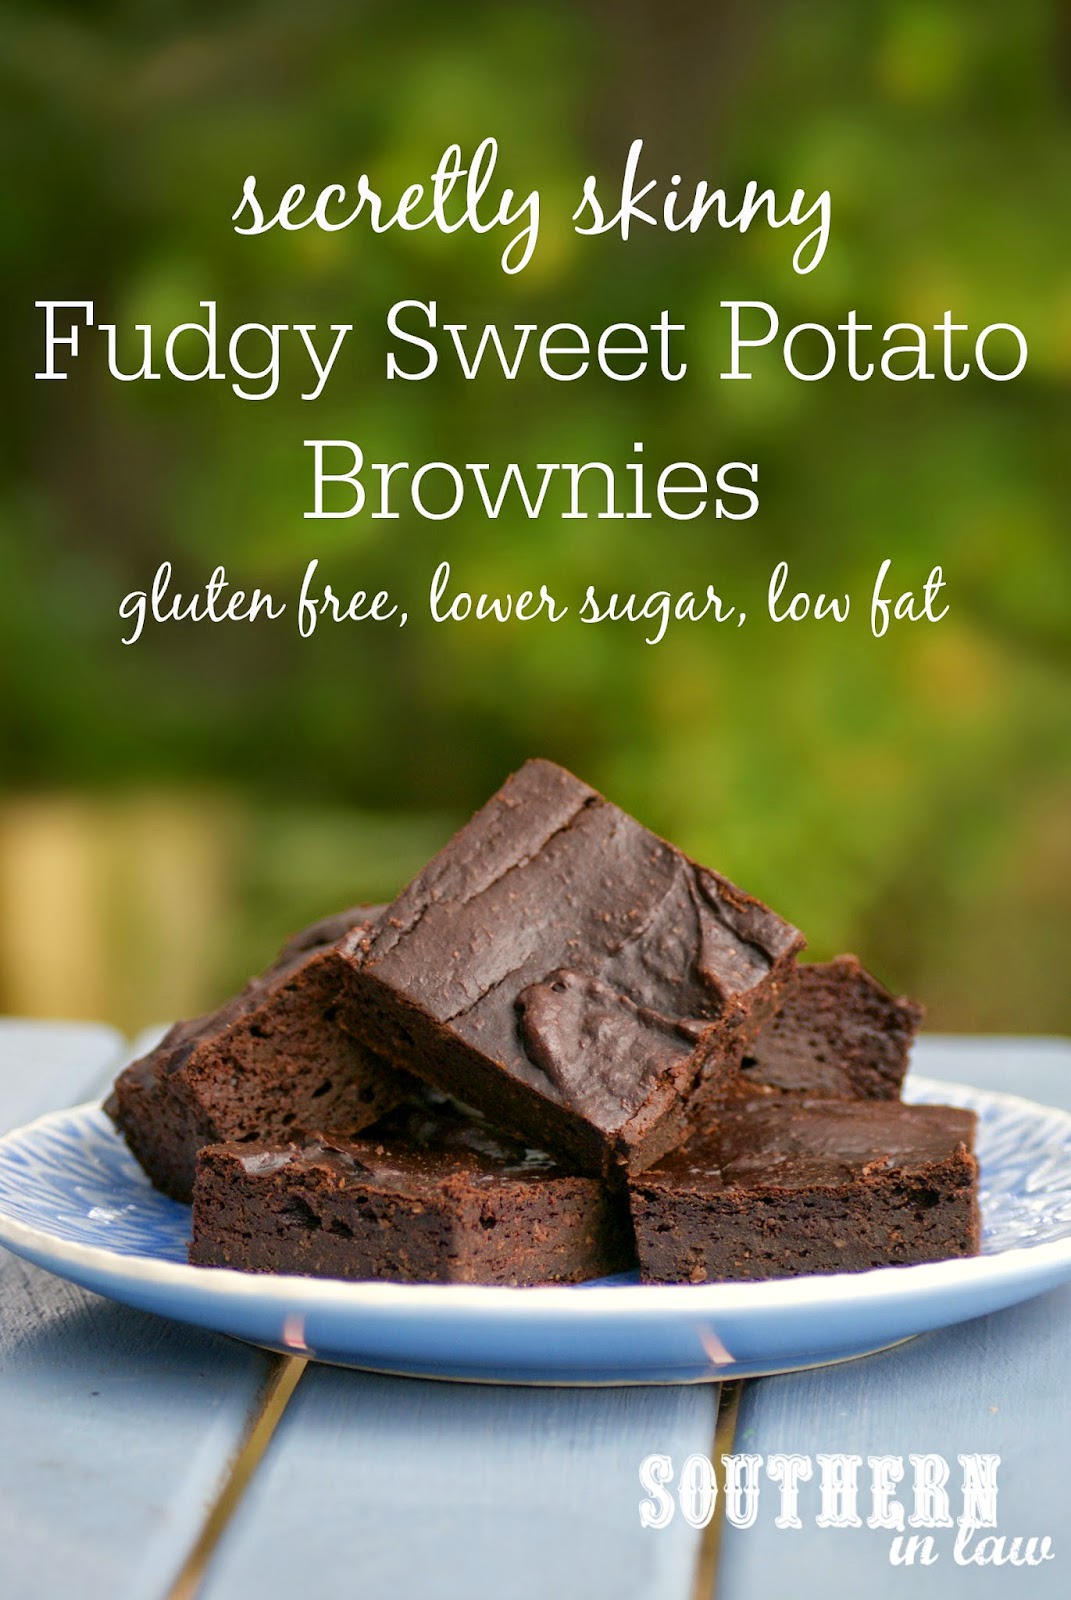 Secretly Skinny Sweet Potato Brownies Recipe - low fat, gluten free, low sugar, healthy